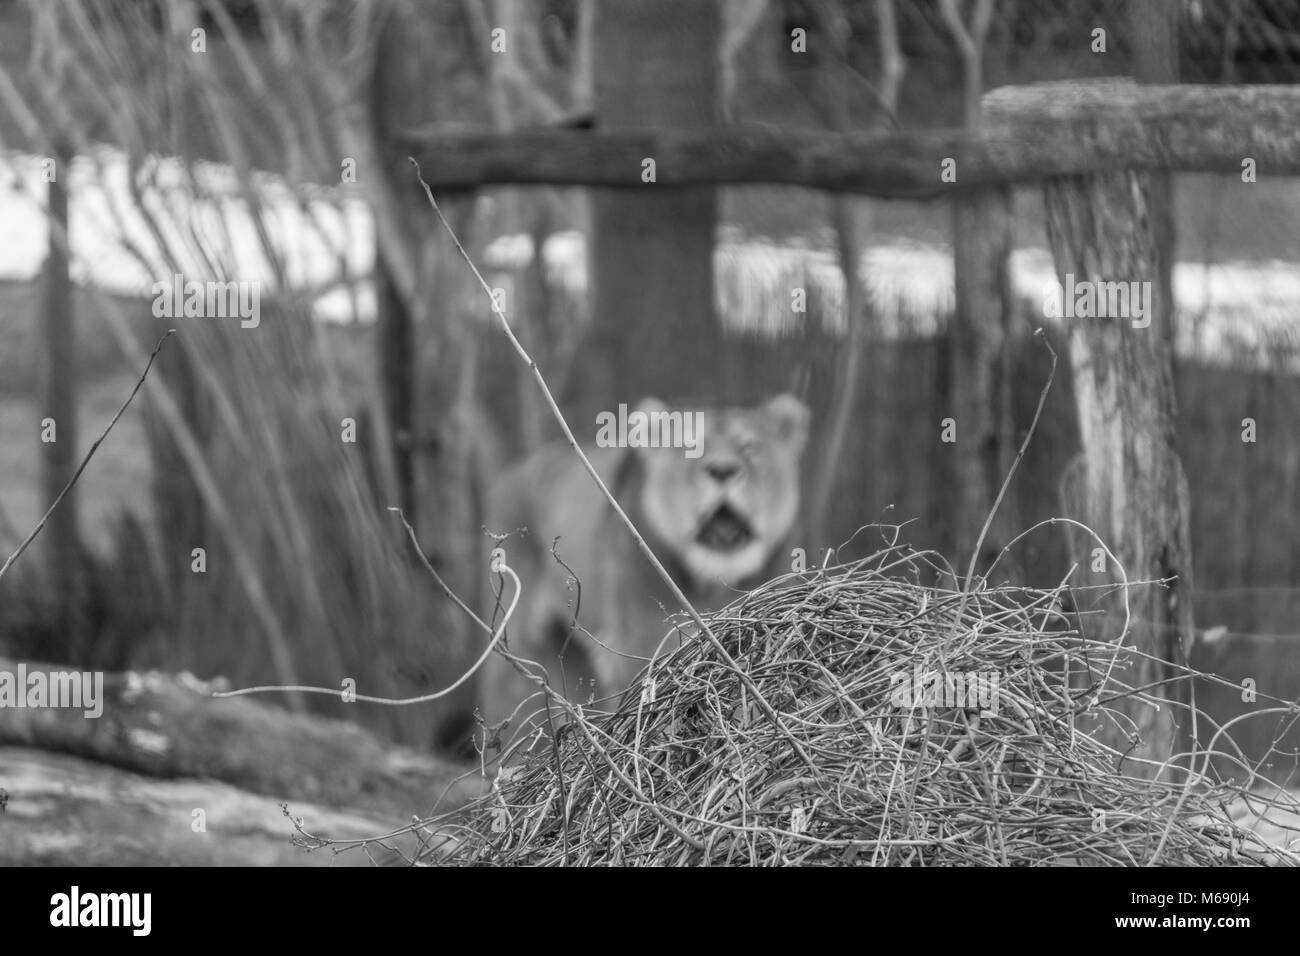 Bianco e nero shot incentrato su rametti intrecciati in primo piano con una leonessa sfocata in background Foto Stock